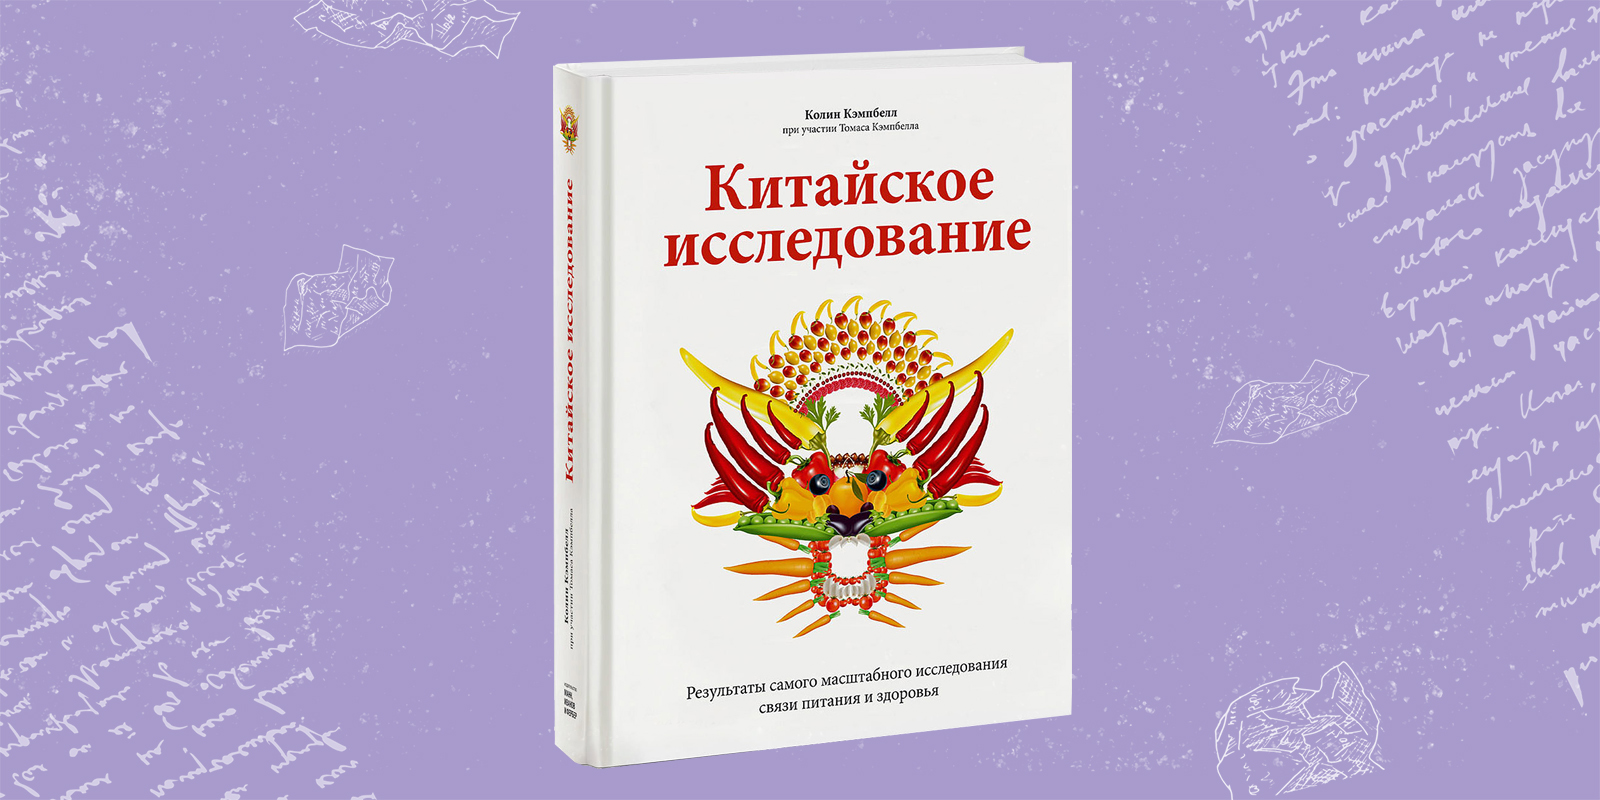 Book Vegan Dlya Novichkov | PDF